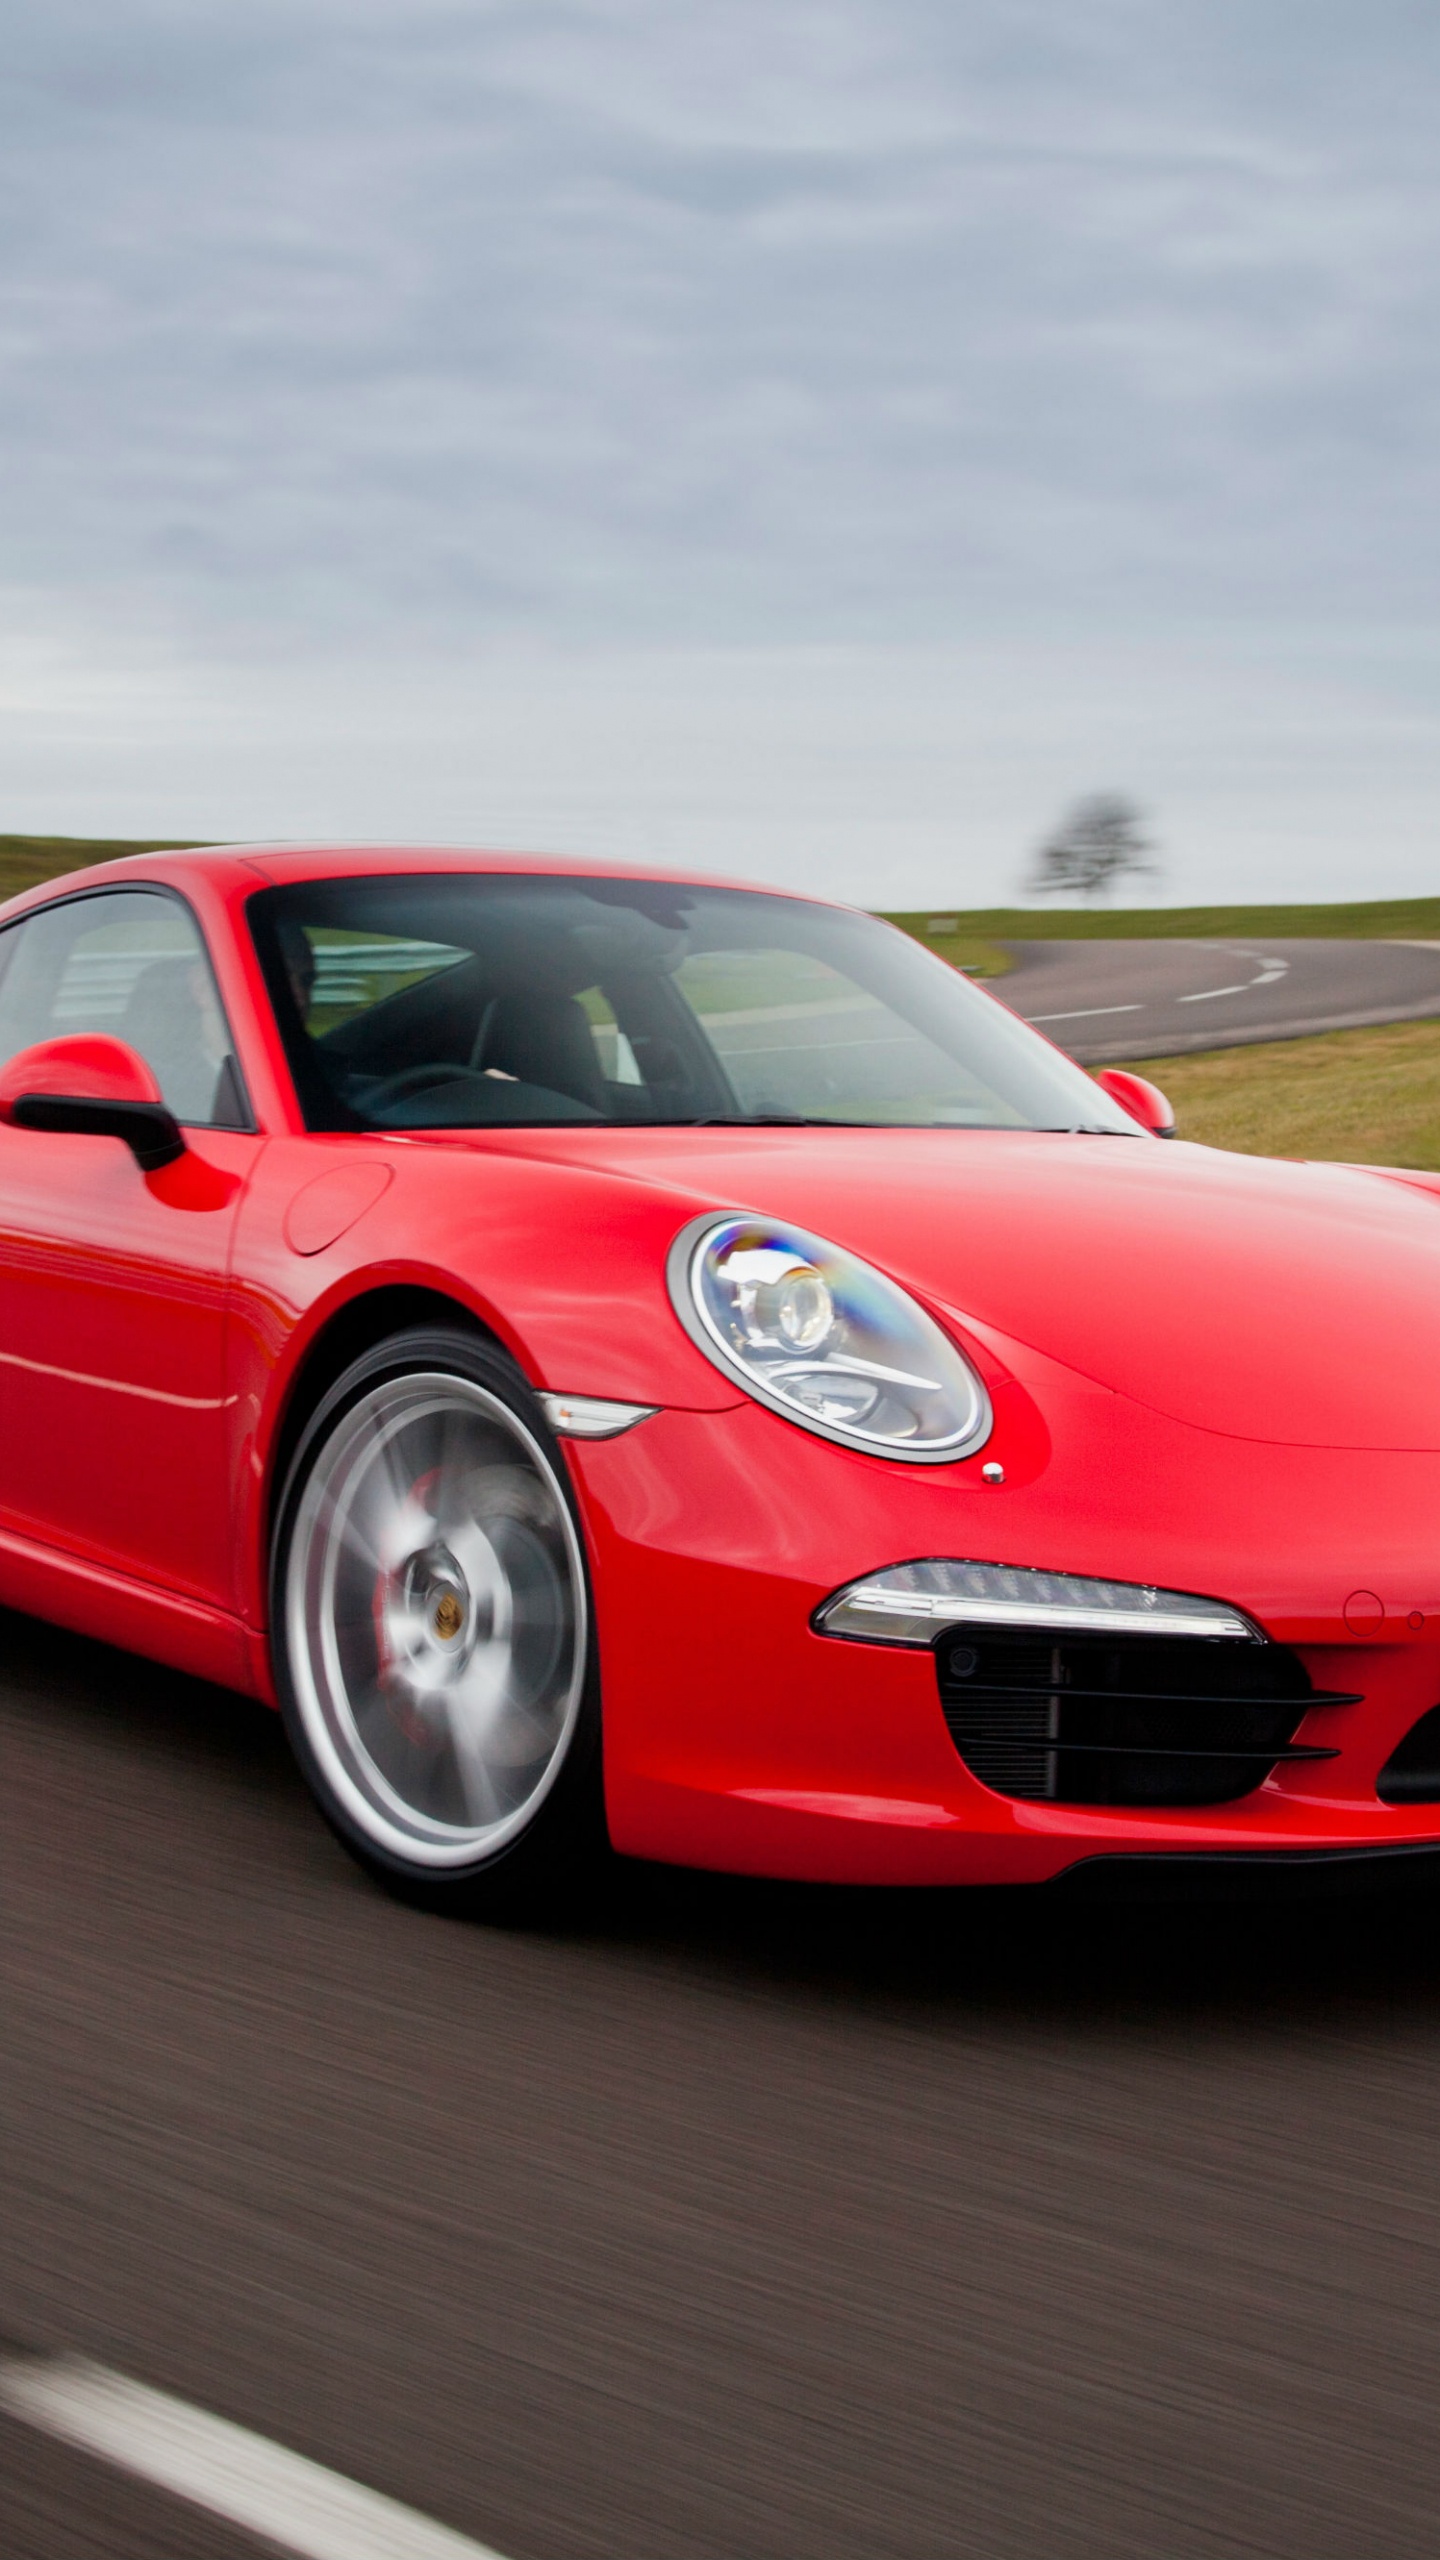 Porsche 911 Rojo en la Carretera Durante el Día. Wallpaper in 1440x2560 Resolution